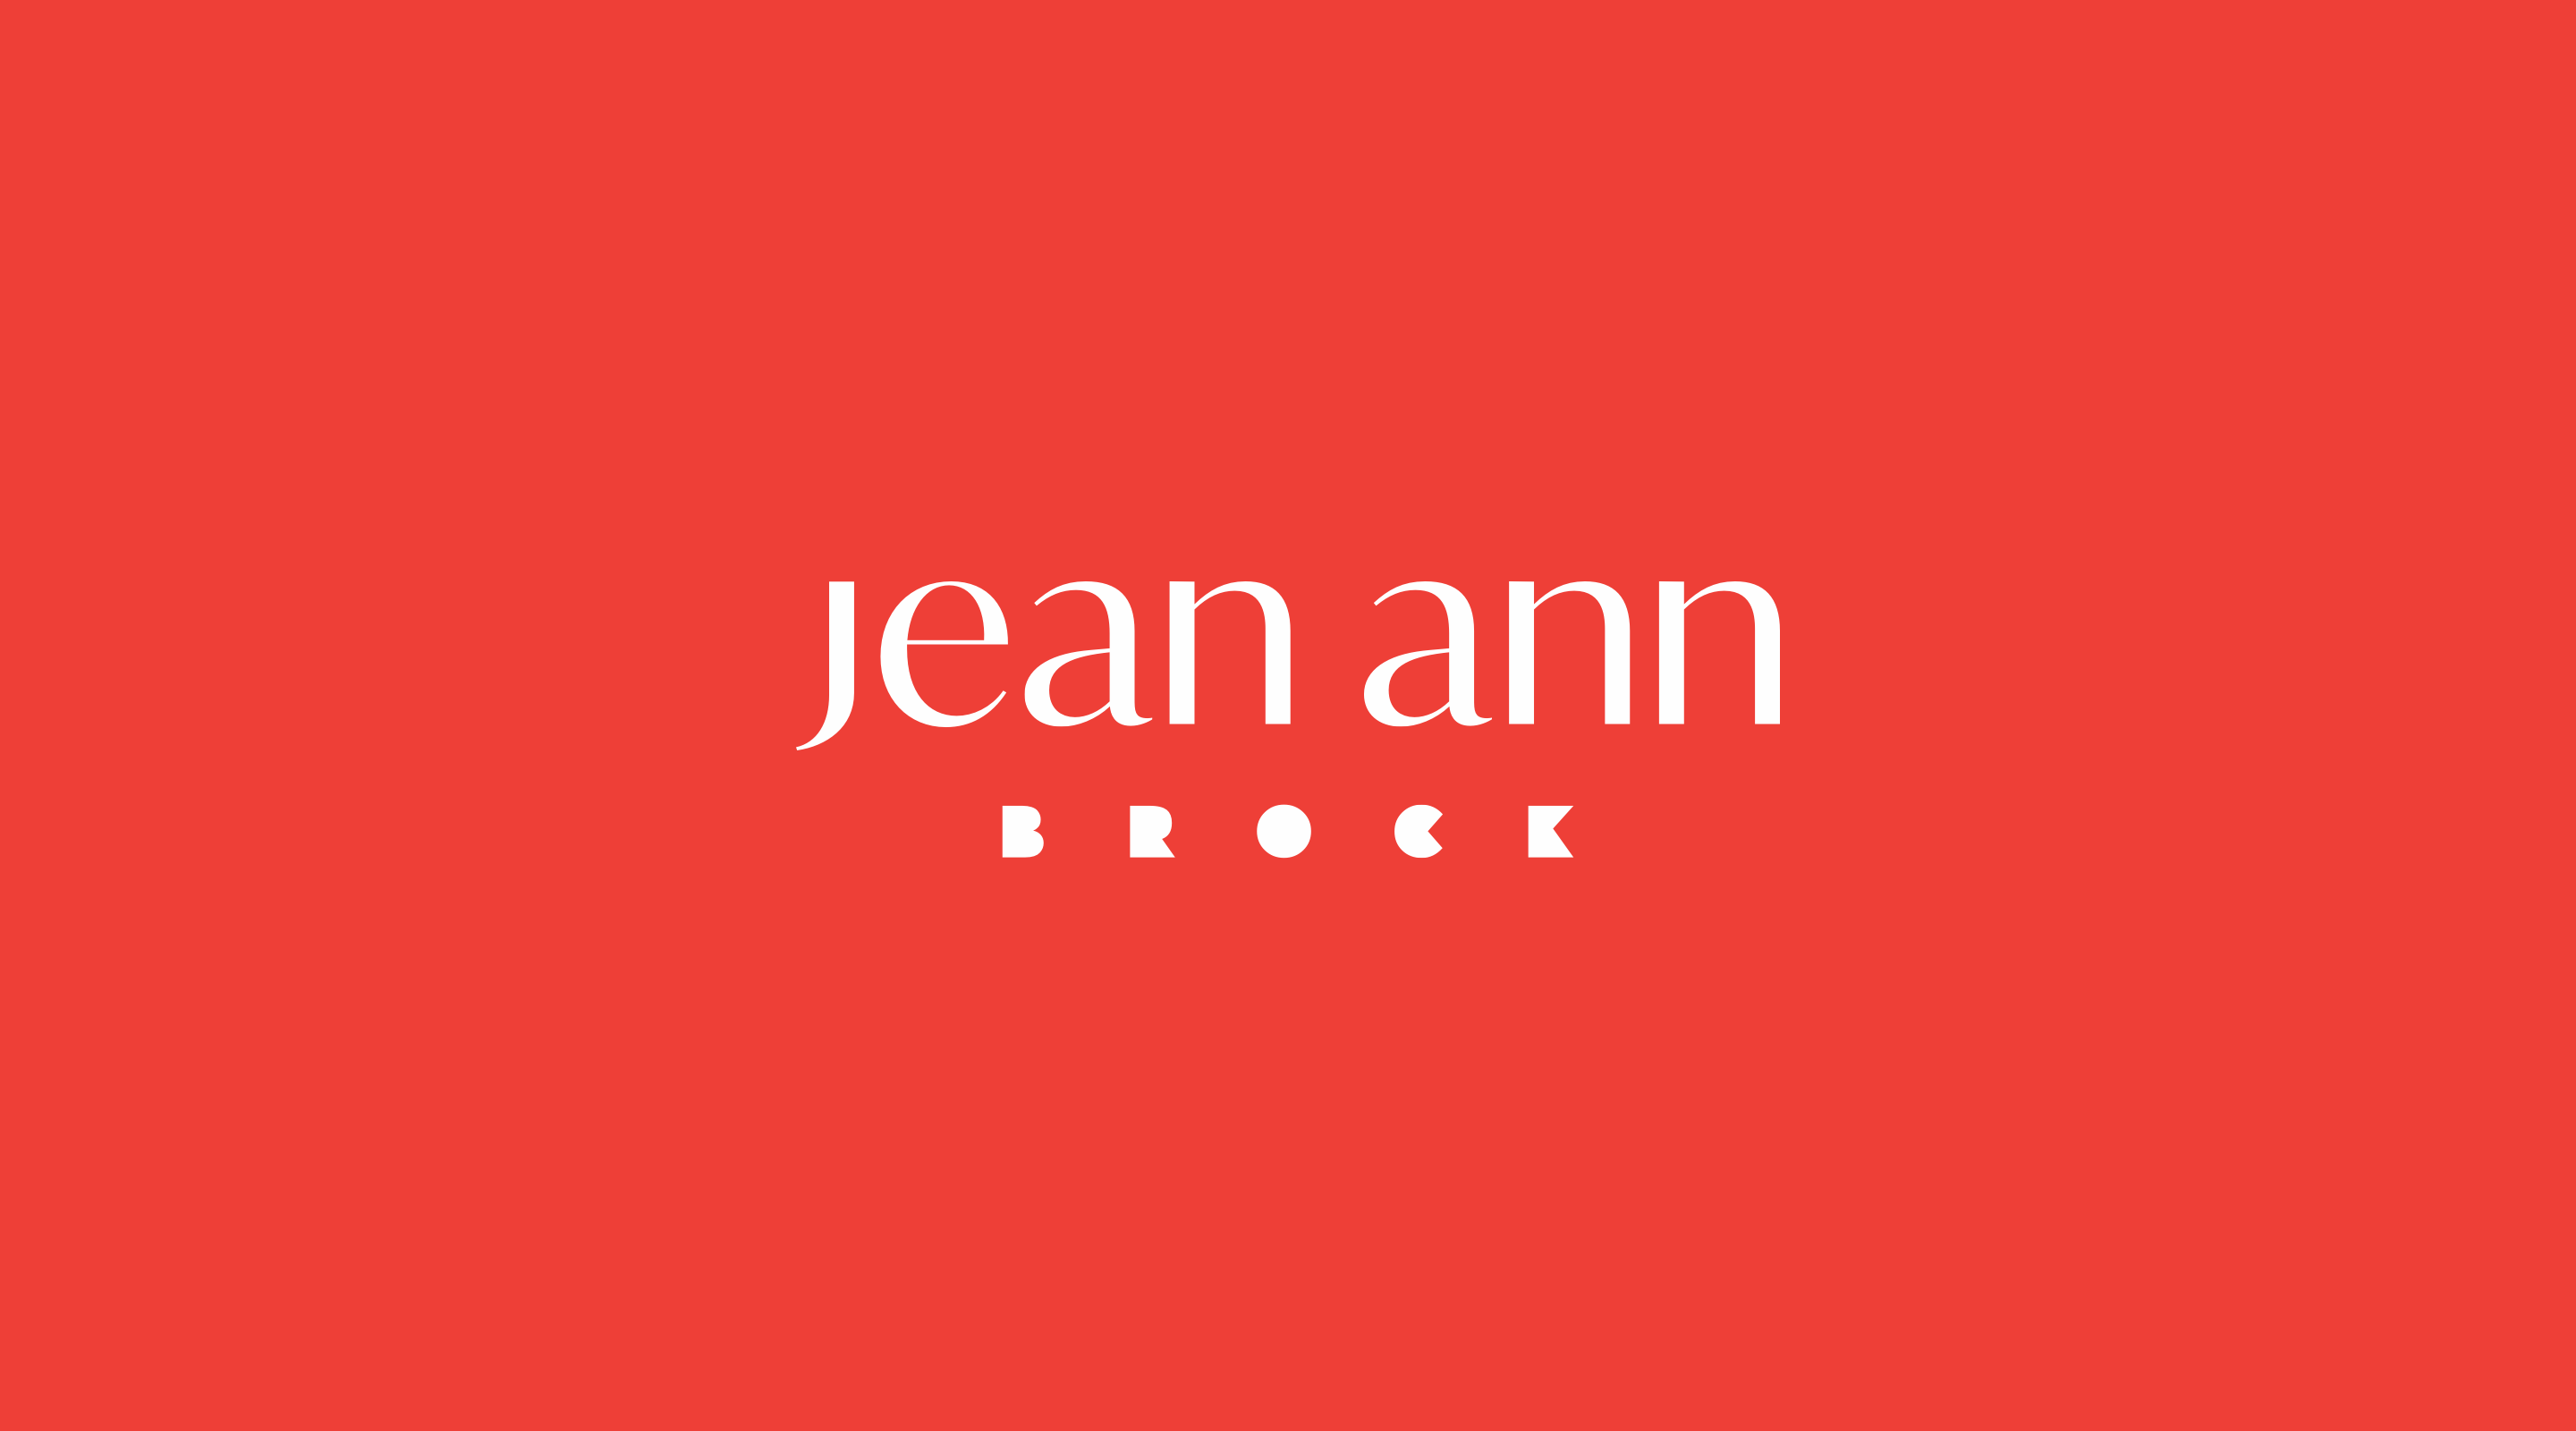 Jean Ann Brock